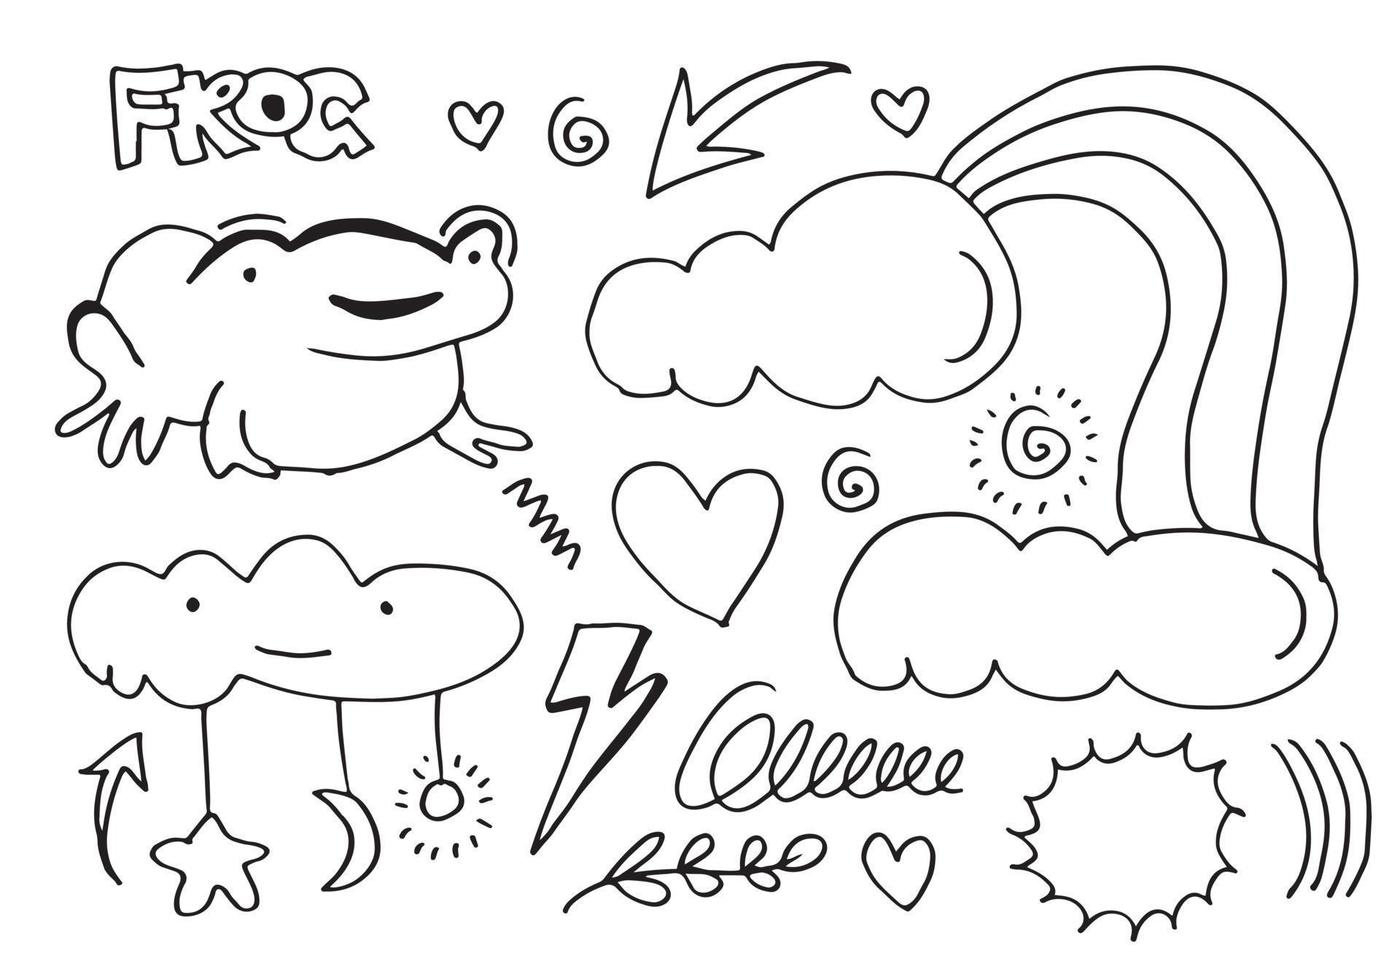 vektor illustration handritad skiss av en groda med pilar, hjärta, måne, löv, stjärnor, fyrverkerier och moln och andra designelement. linjedesign.